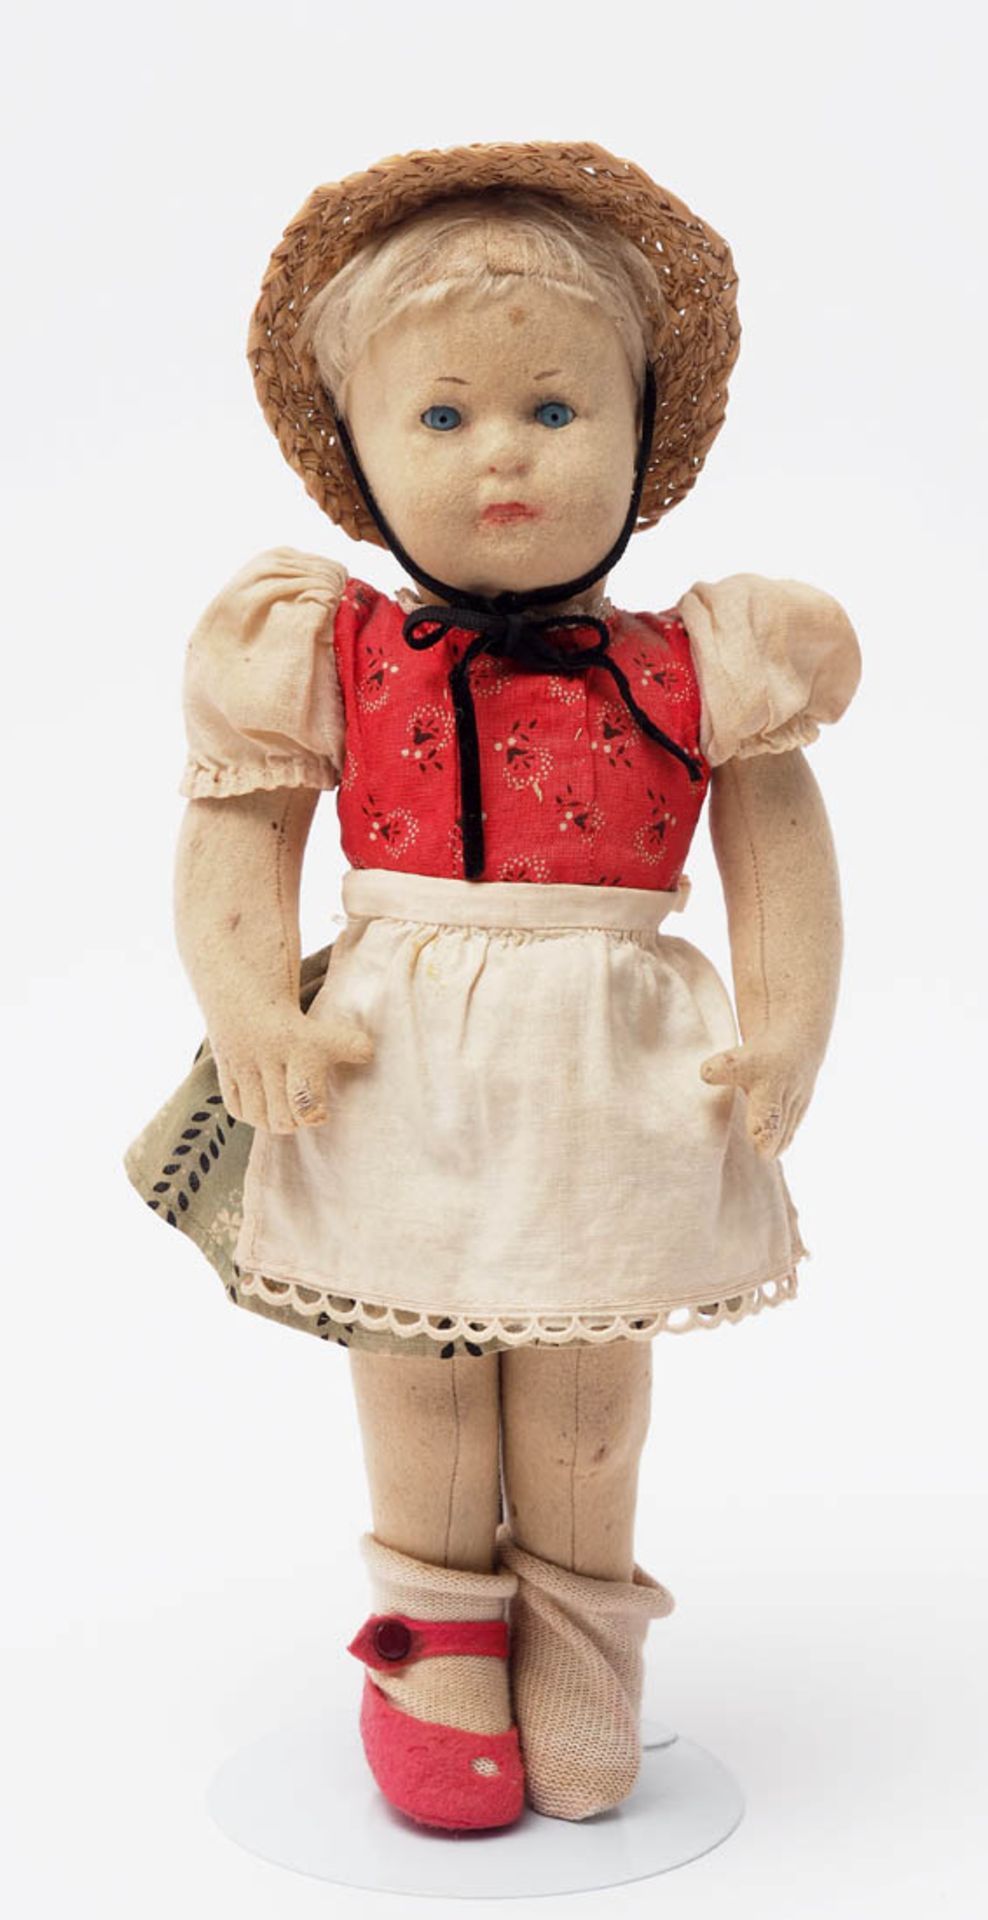 Filz-Puppe, Steiff, 40er Jahre Filzkörper mit genähten Händen und Armen. Gescheibte Beine.